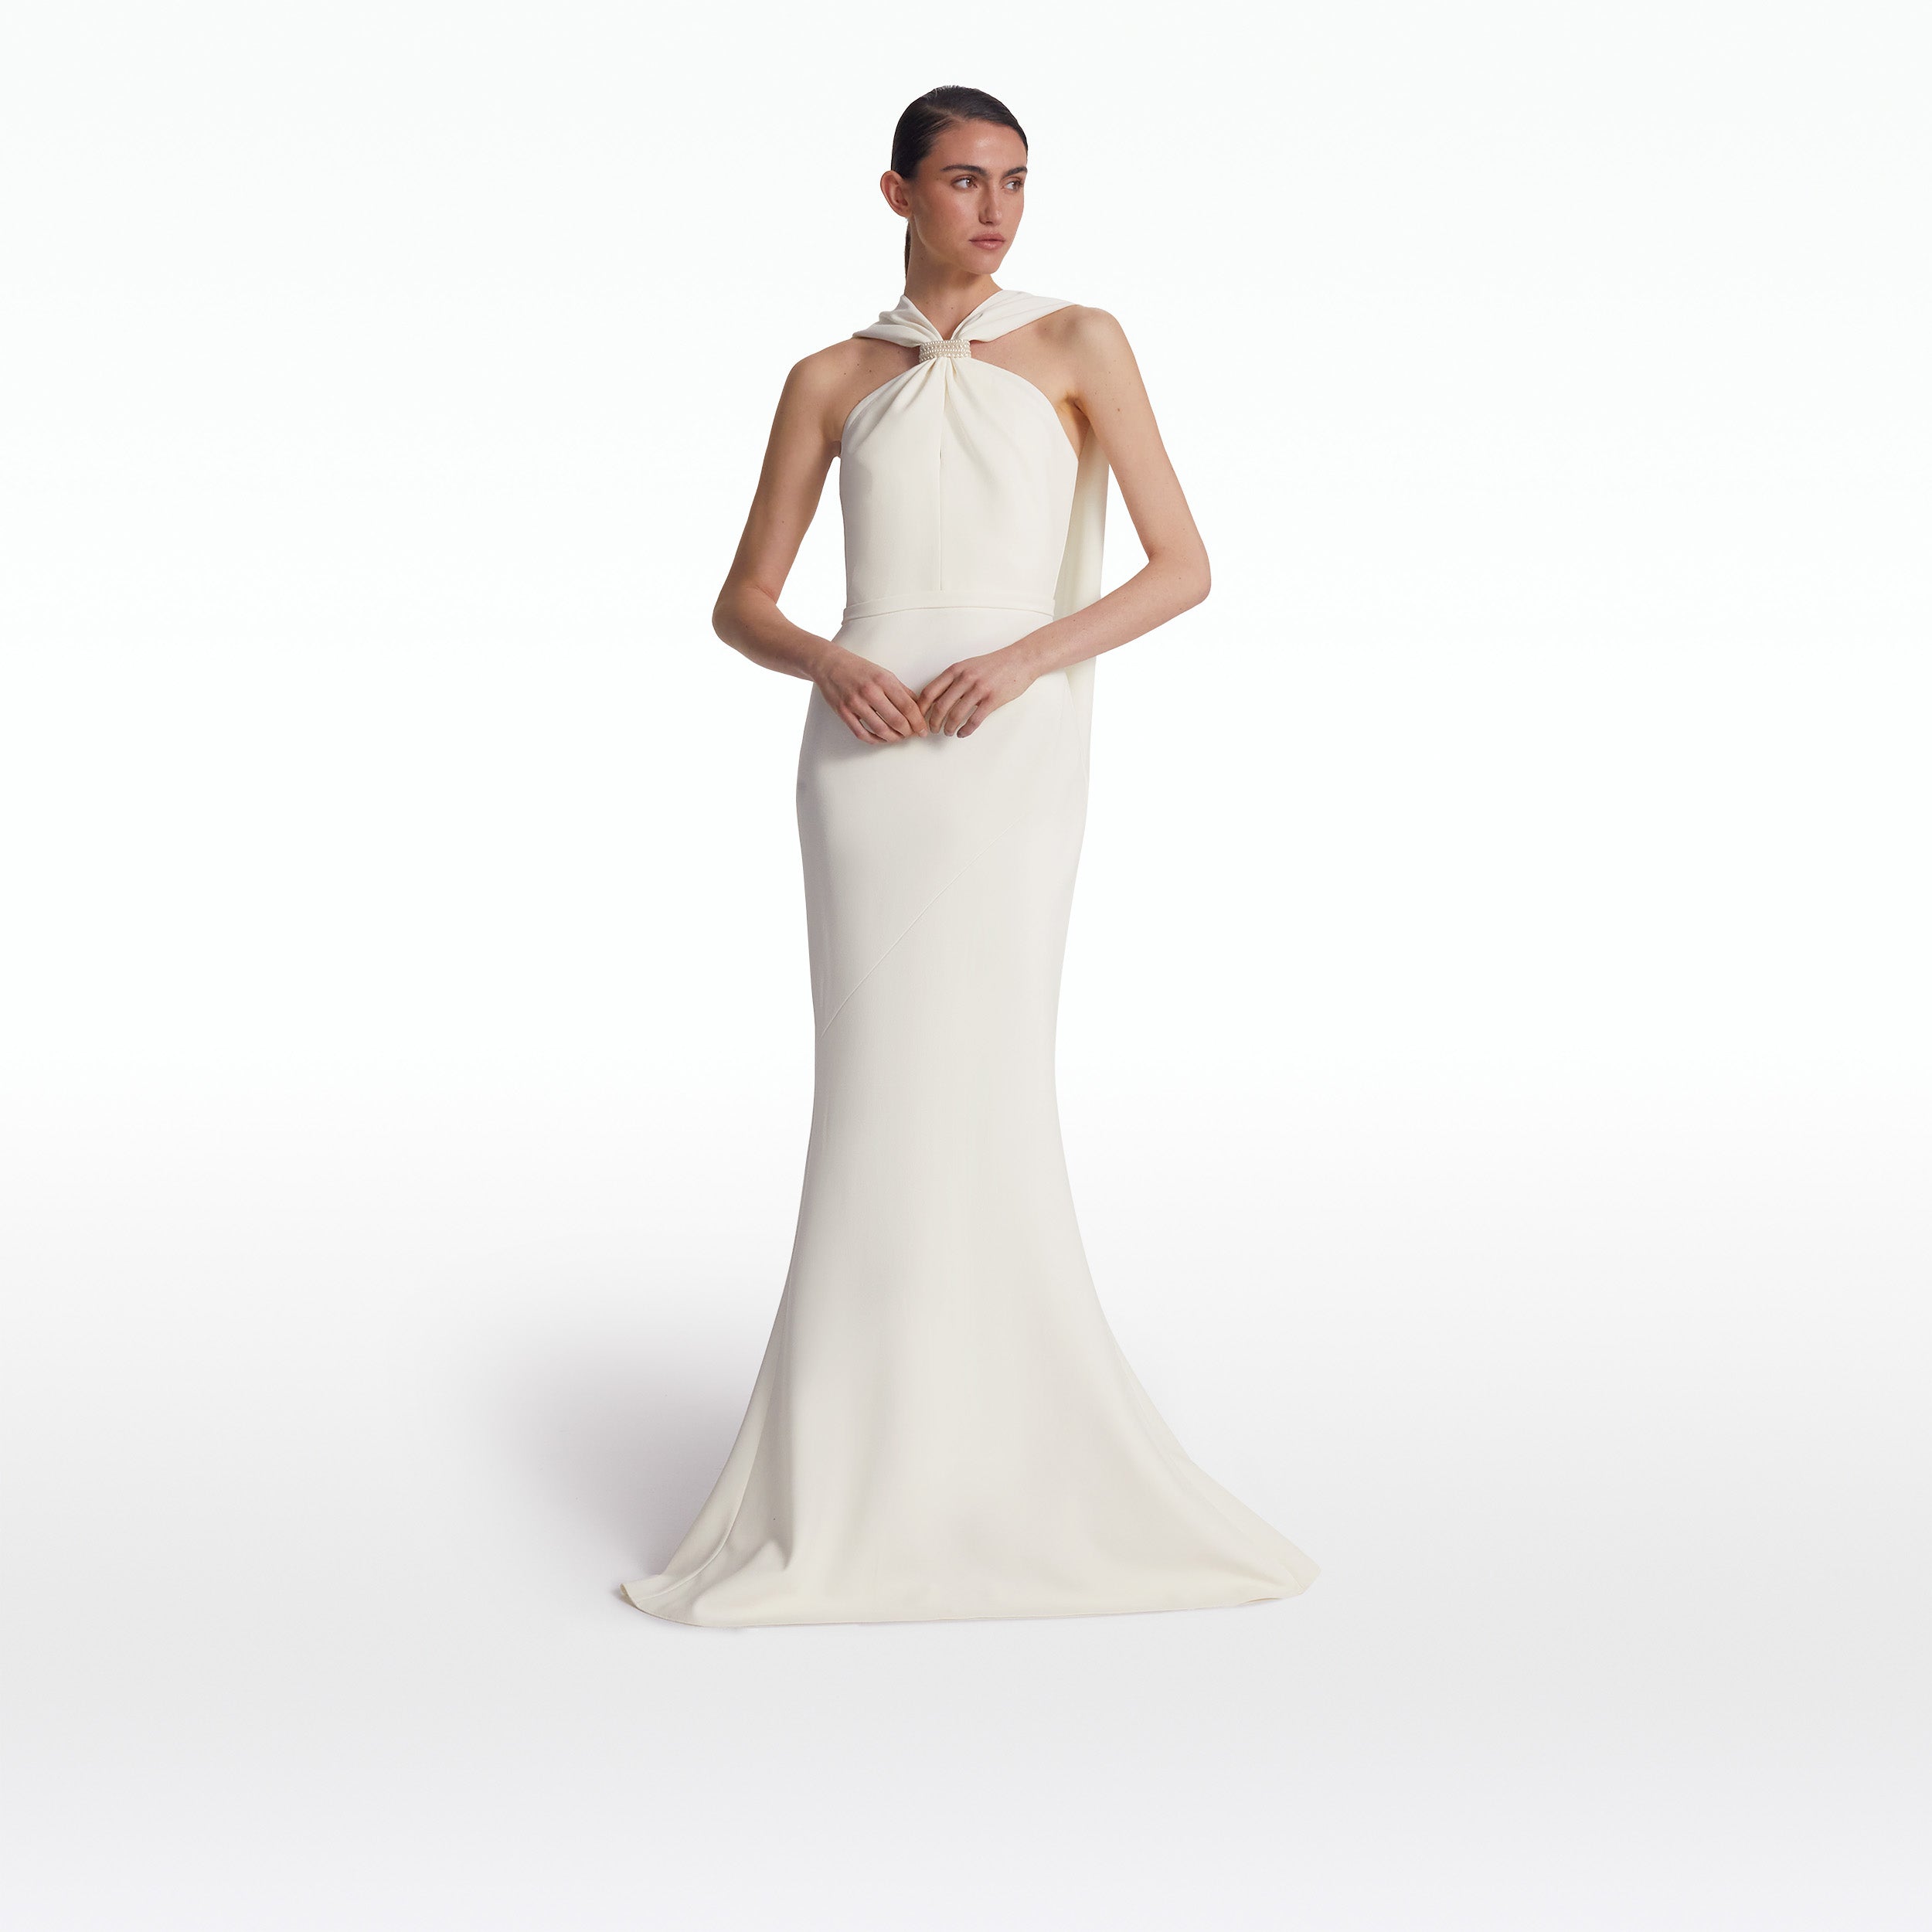 Lilien Ivory long Dress